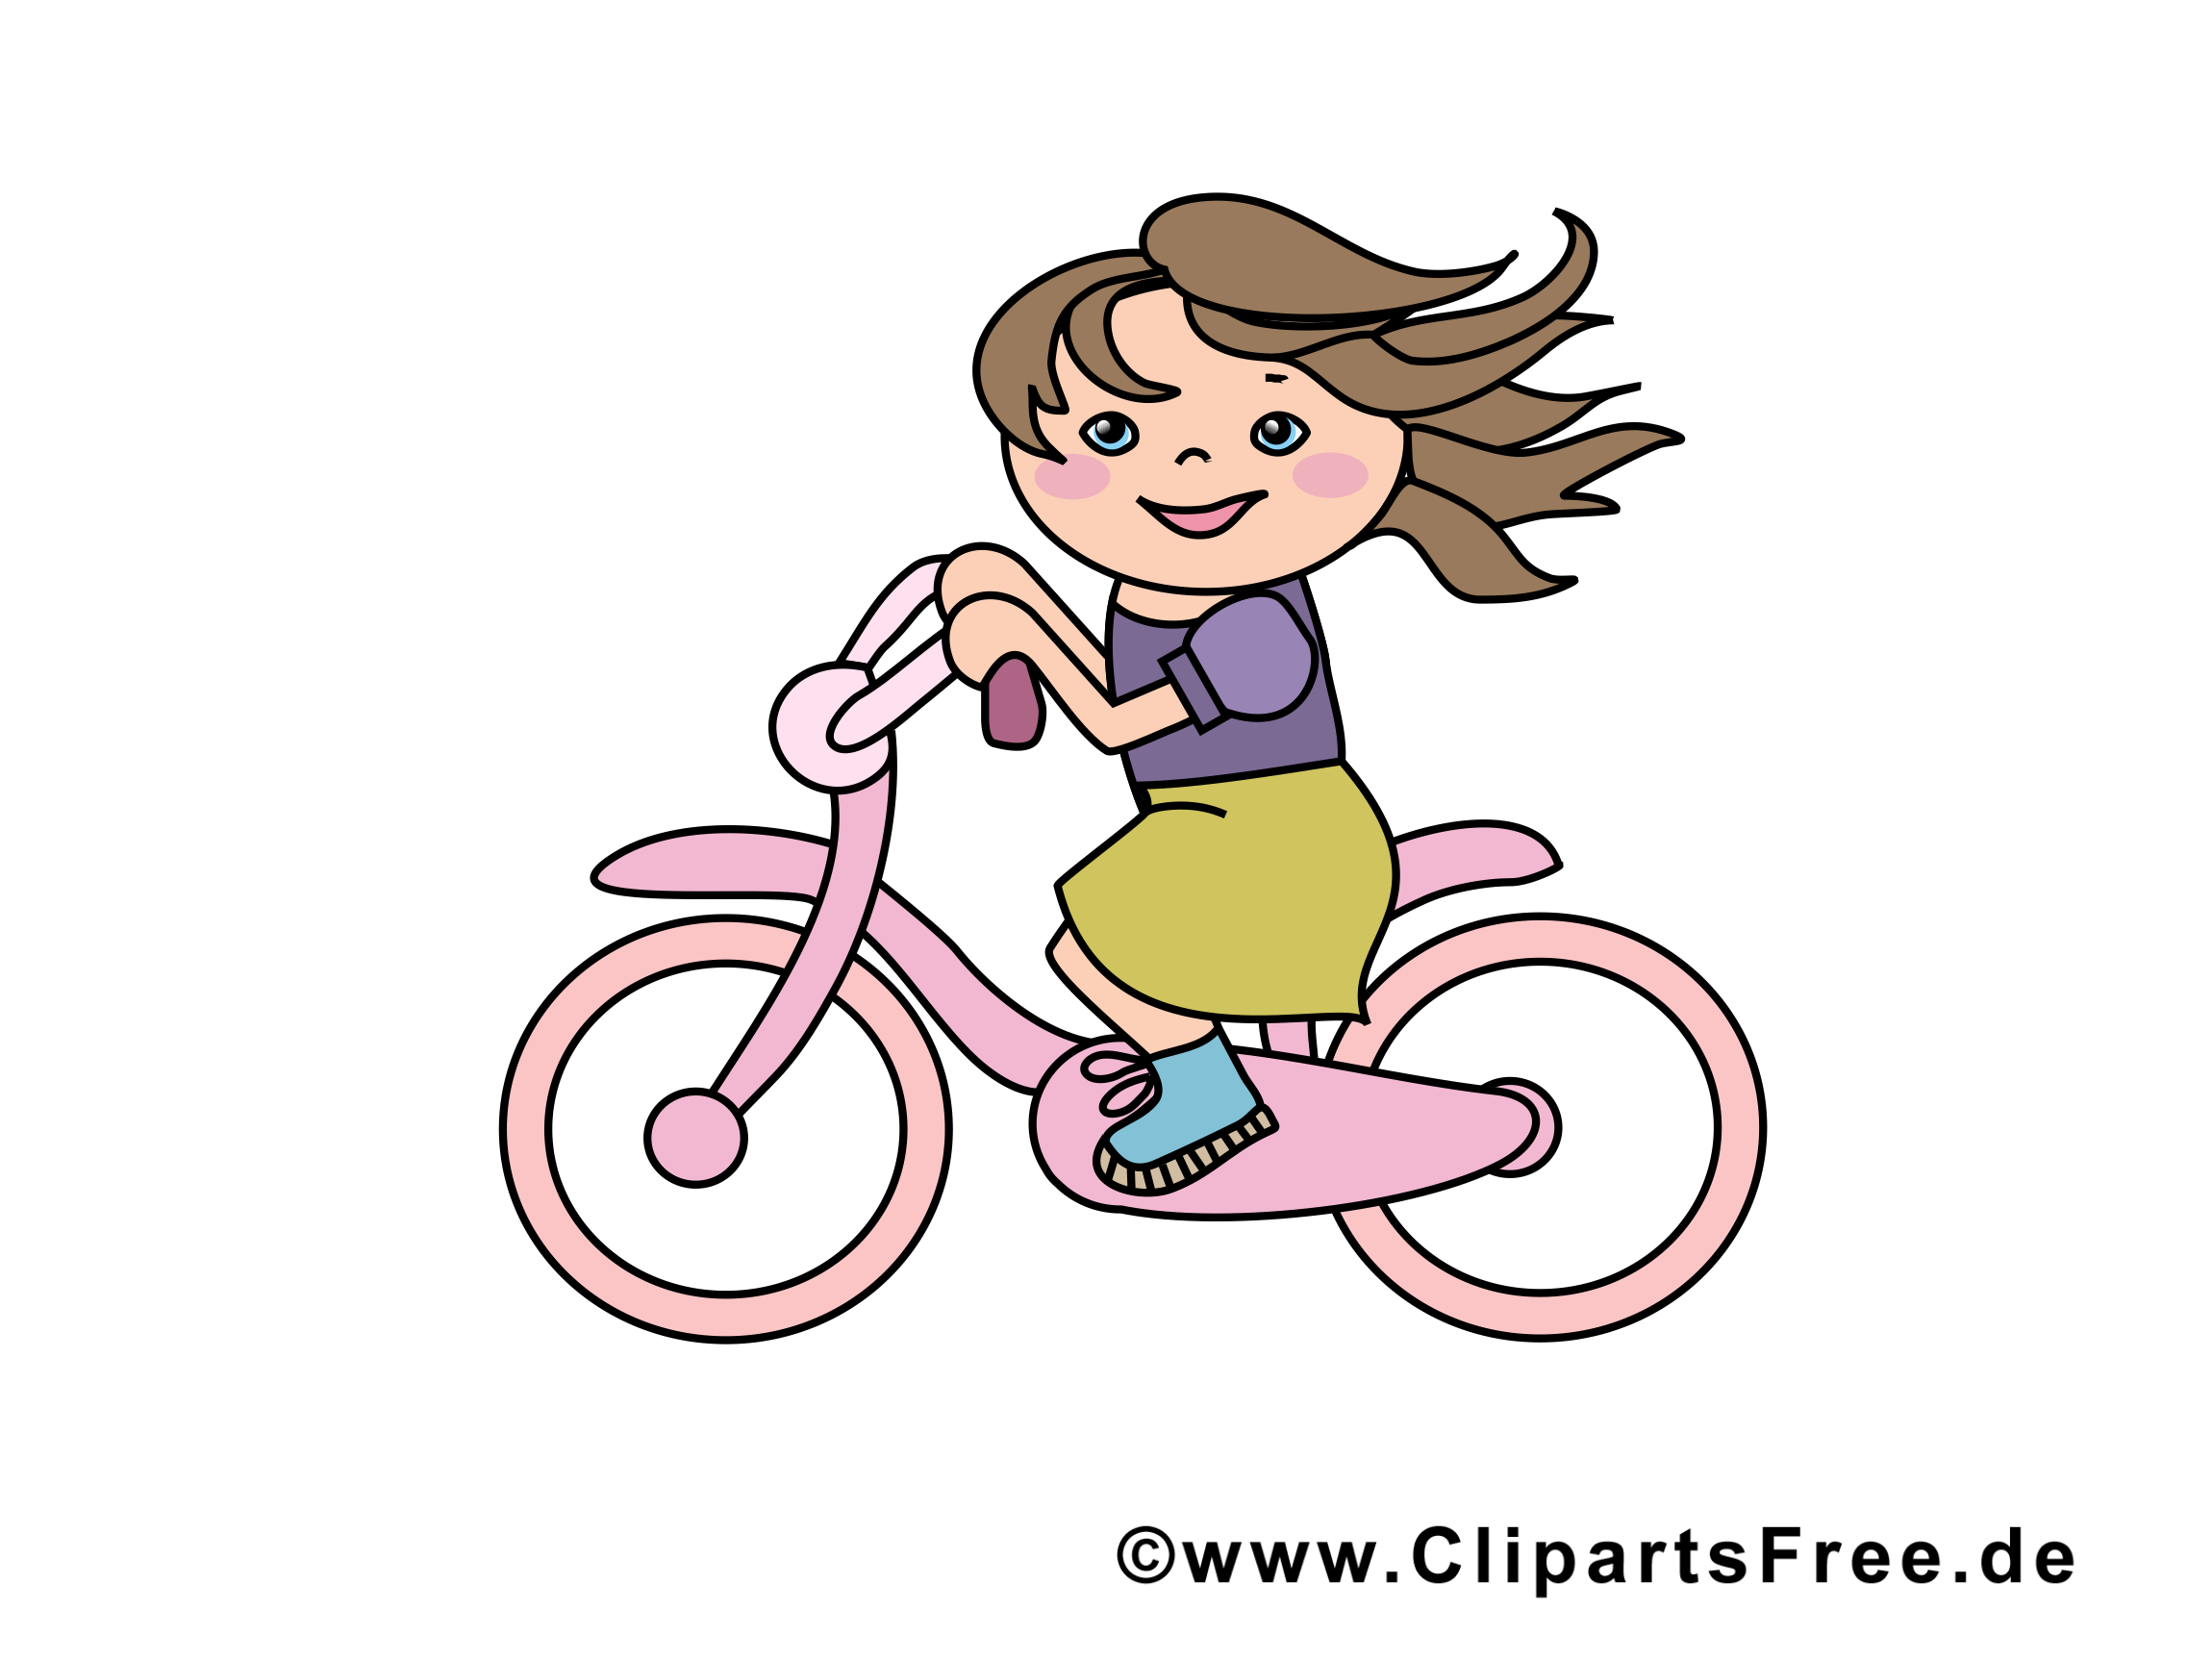 Bicyclette images - Fille dessins gratuits